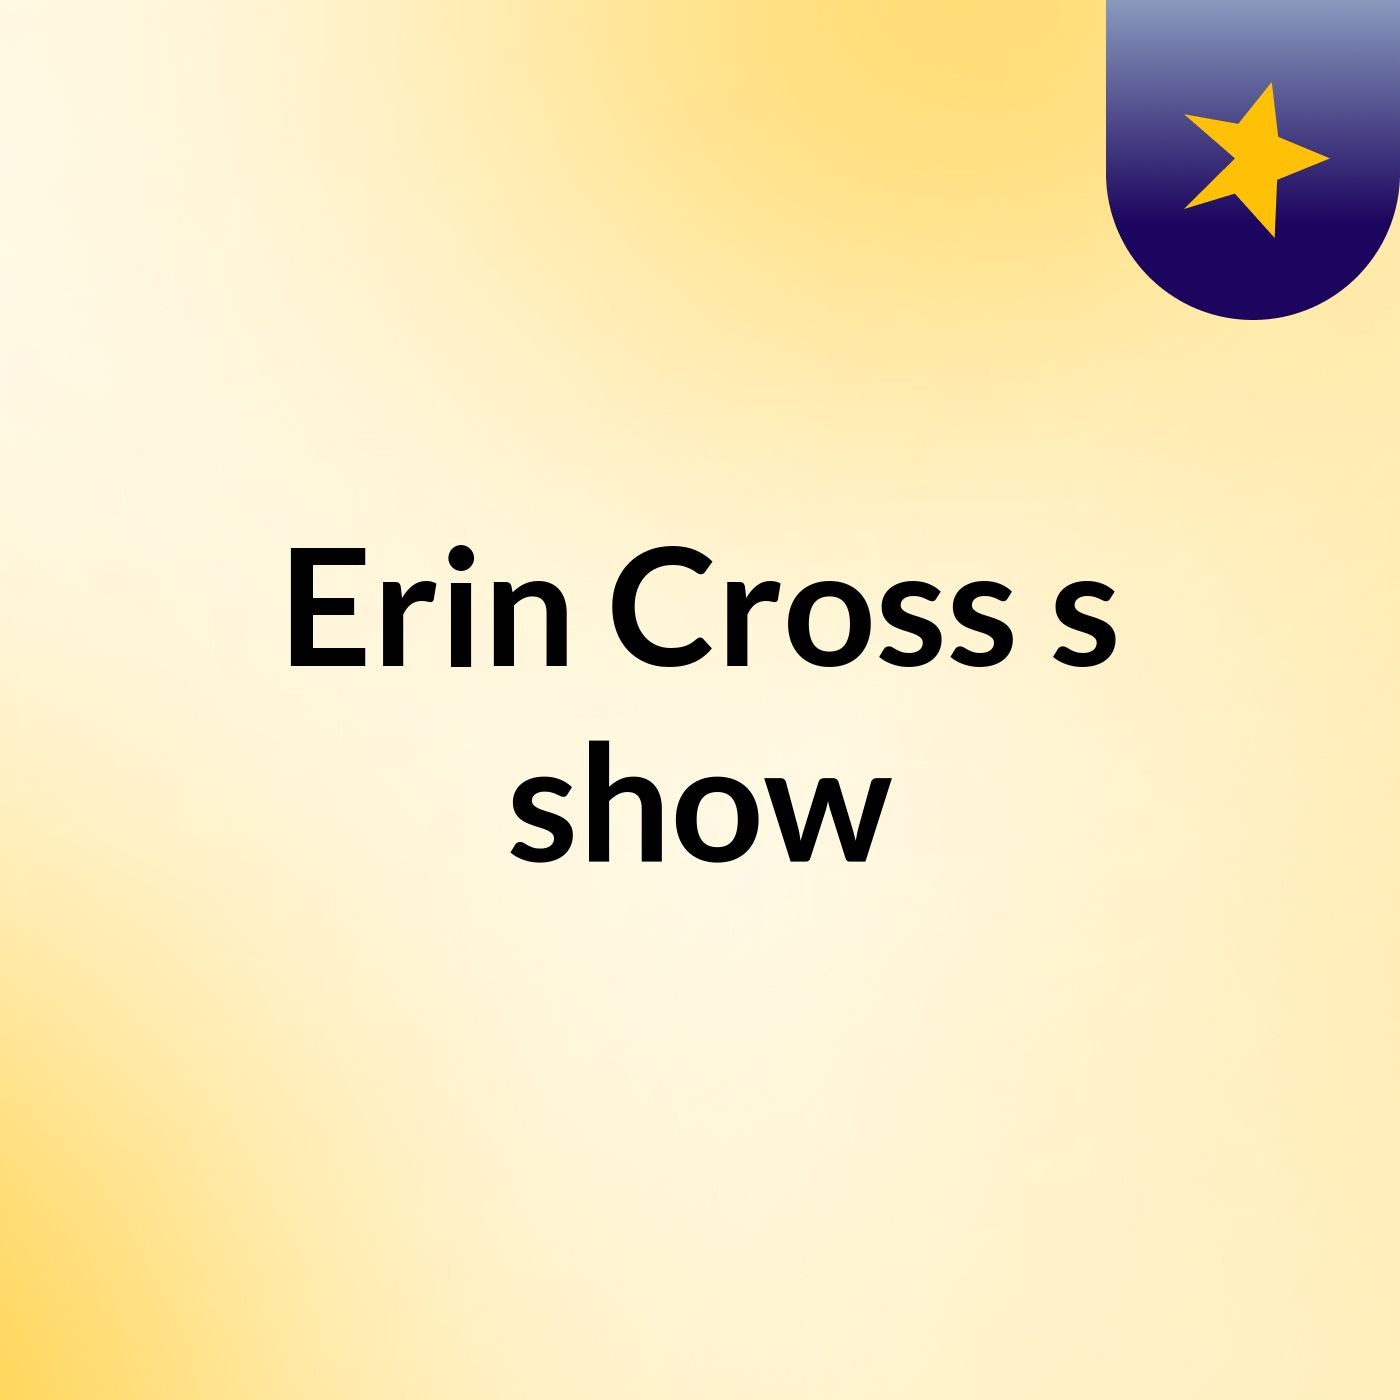 Erin Cross's show